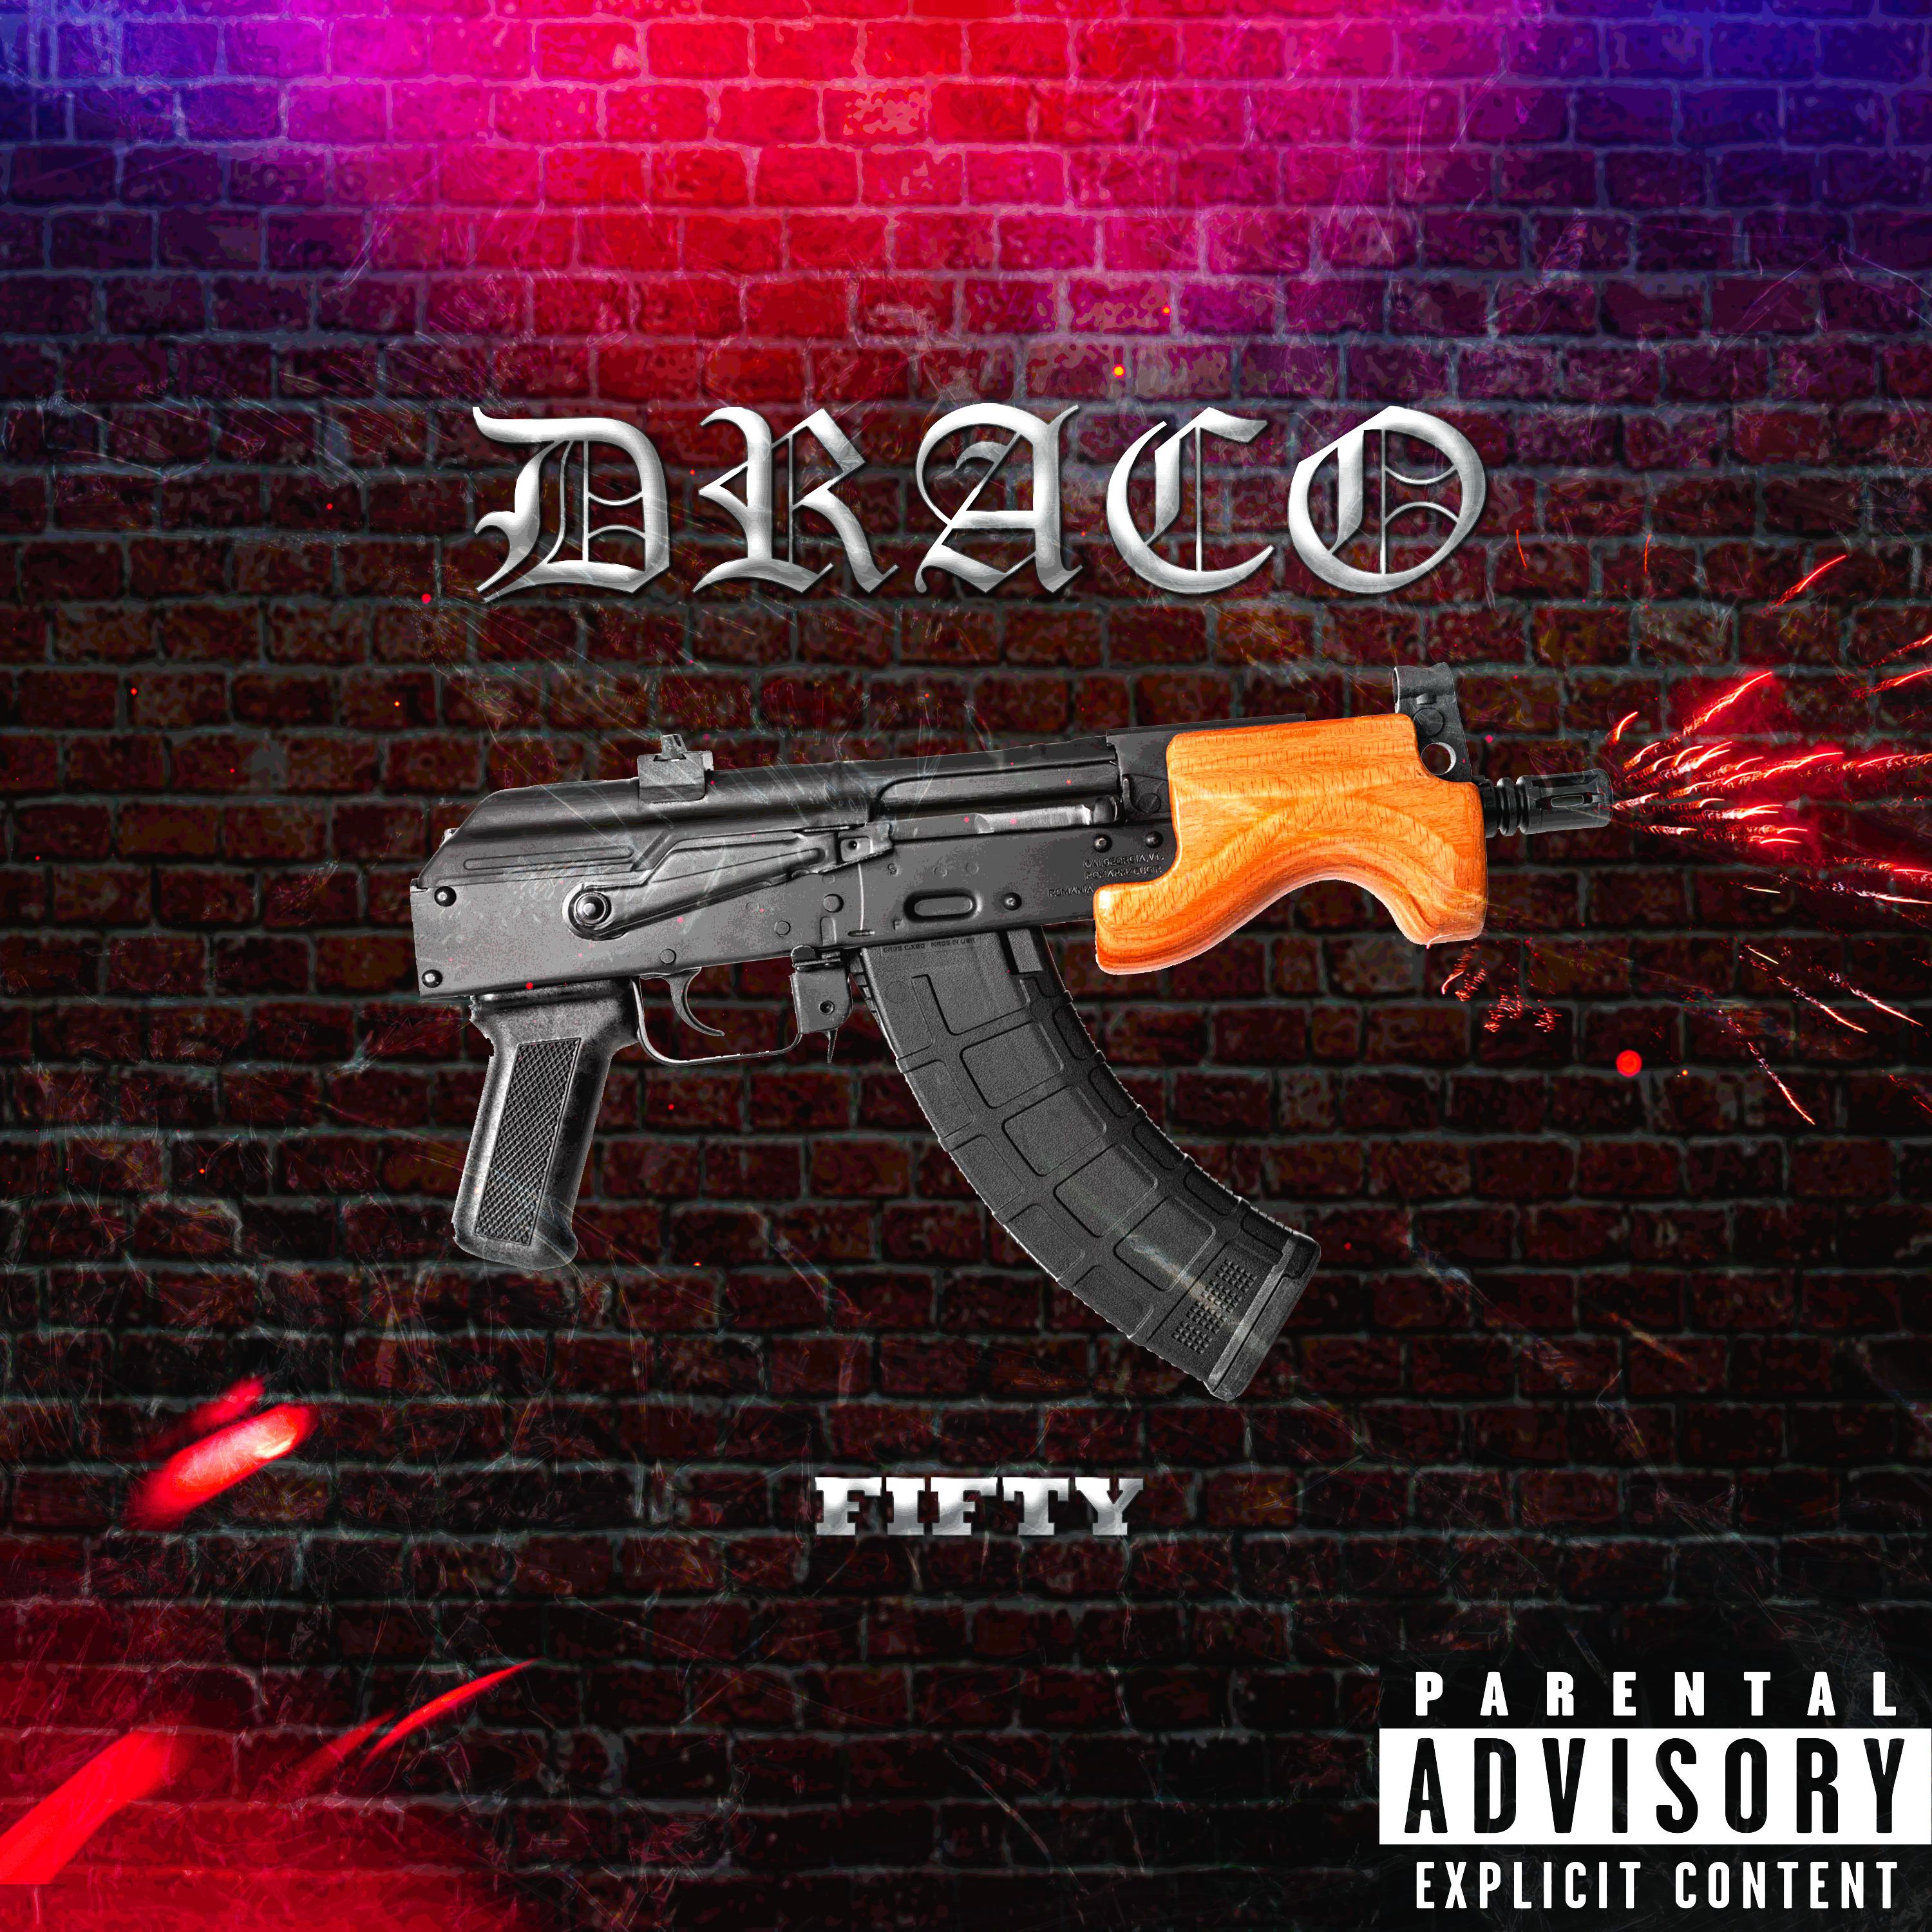 Постер альбома Draco